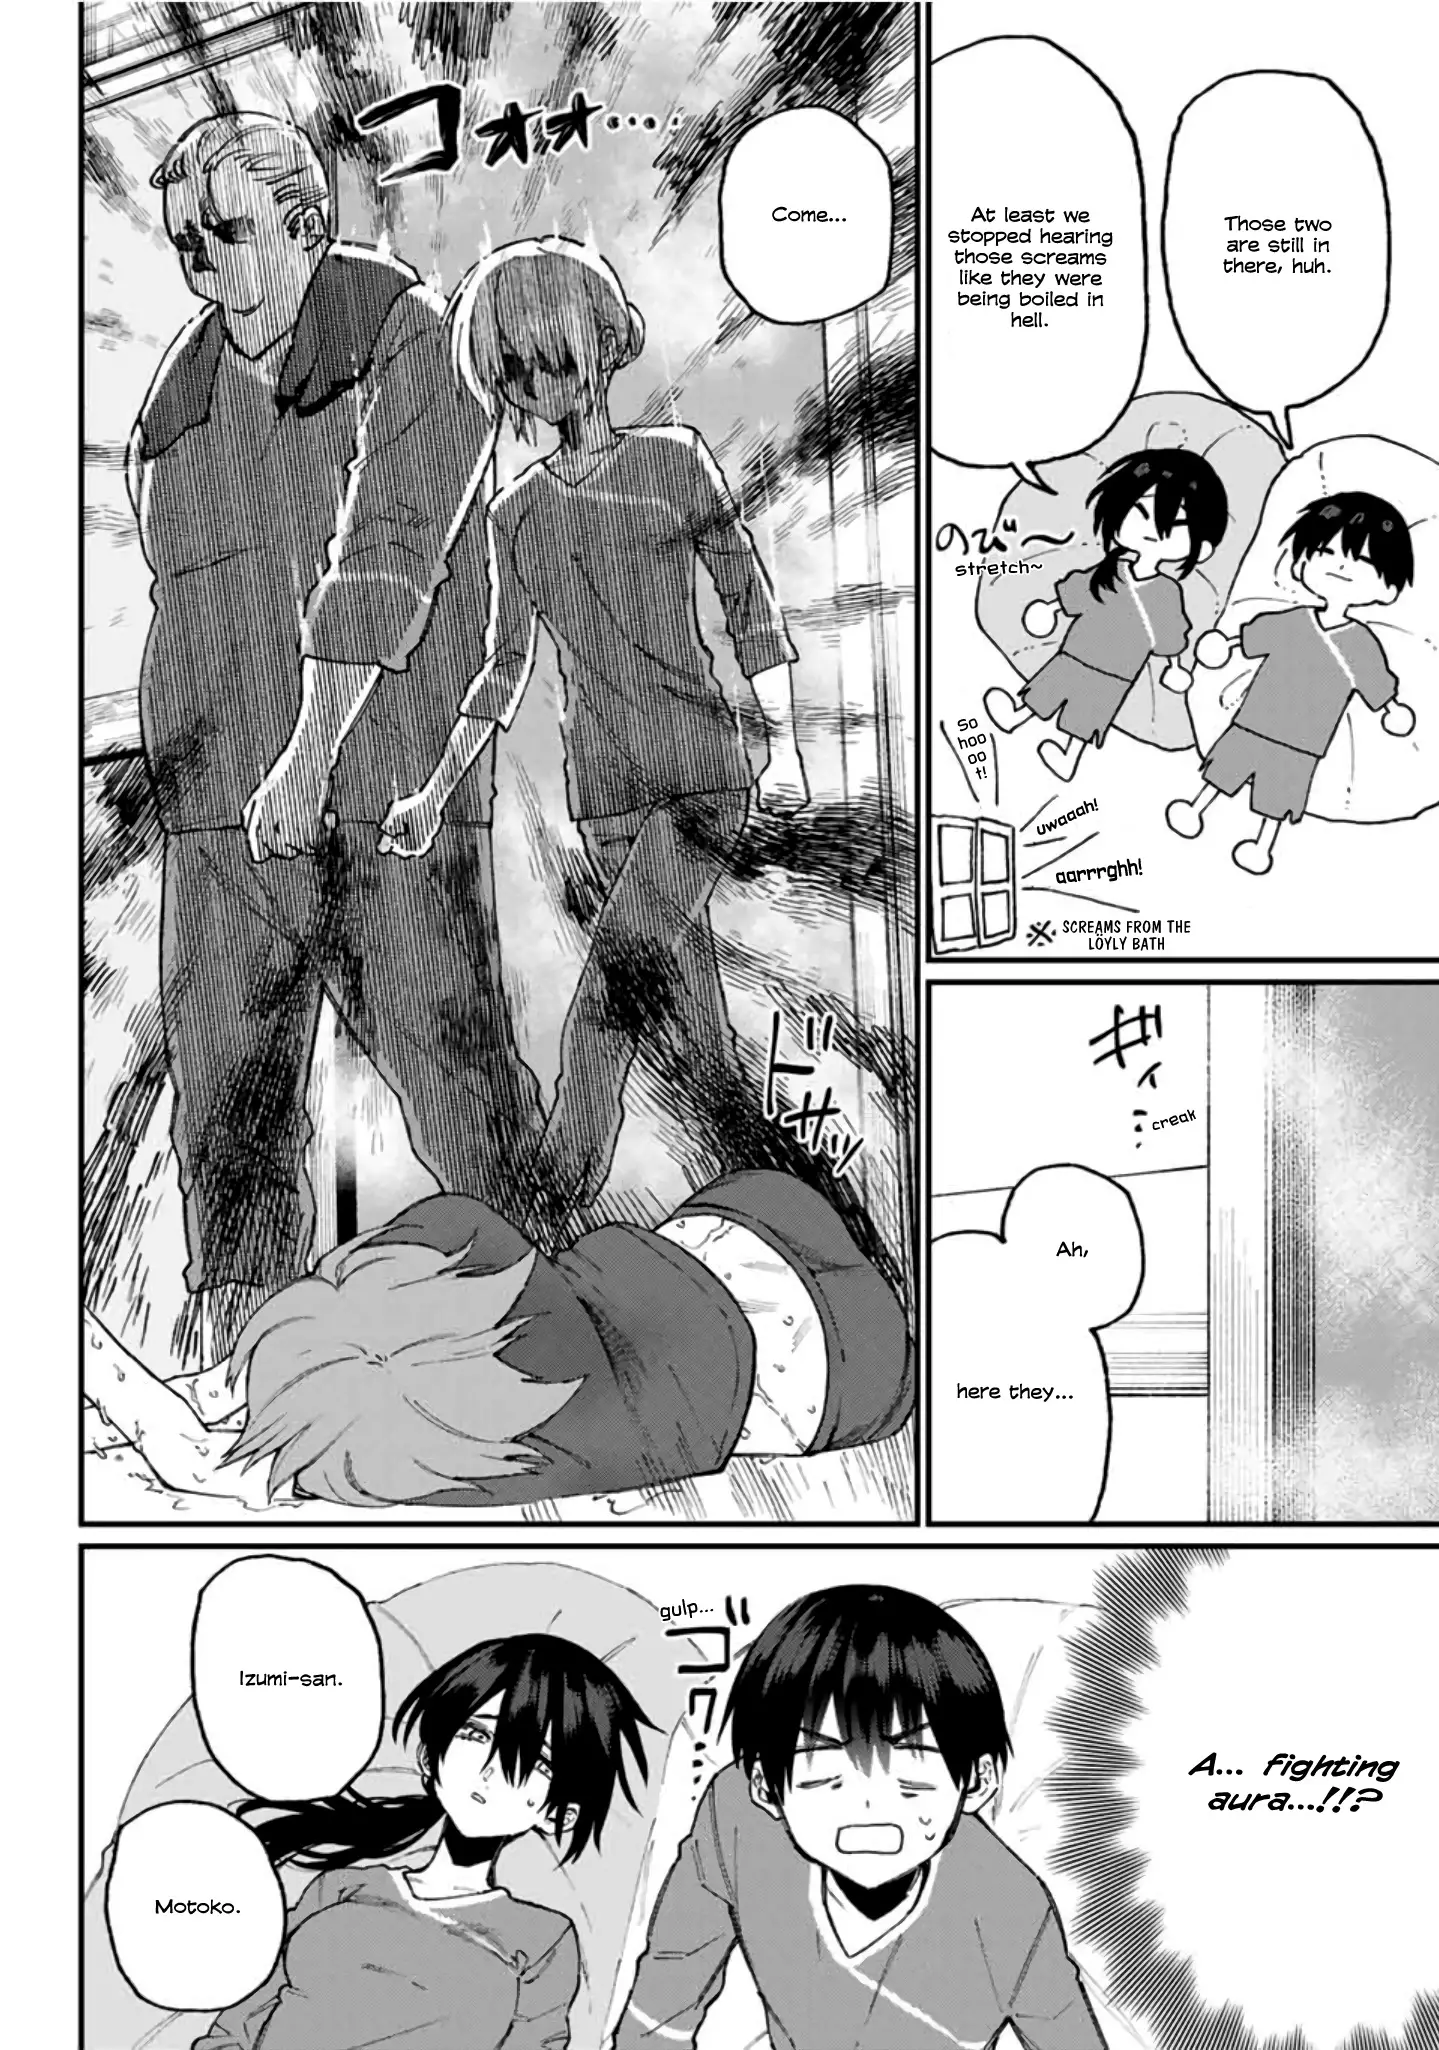 Shikimori's Not Just A Cutie - 63 page 13